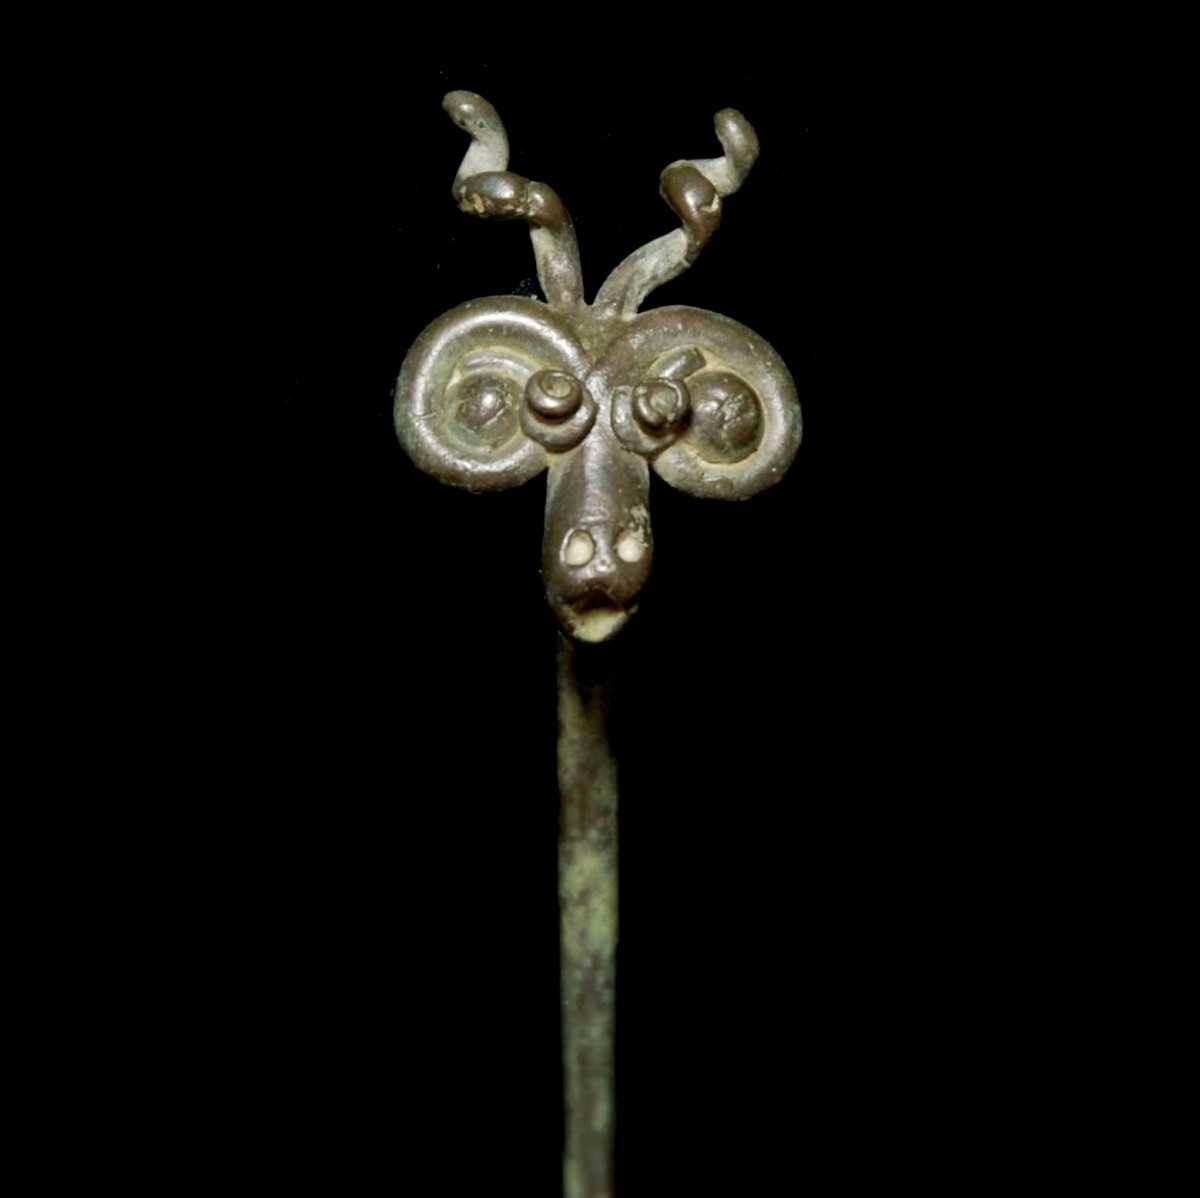 Iranian Bronze needle with deer head detail